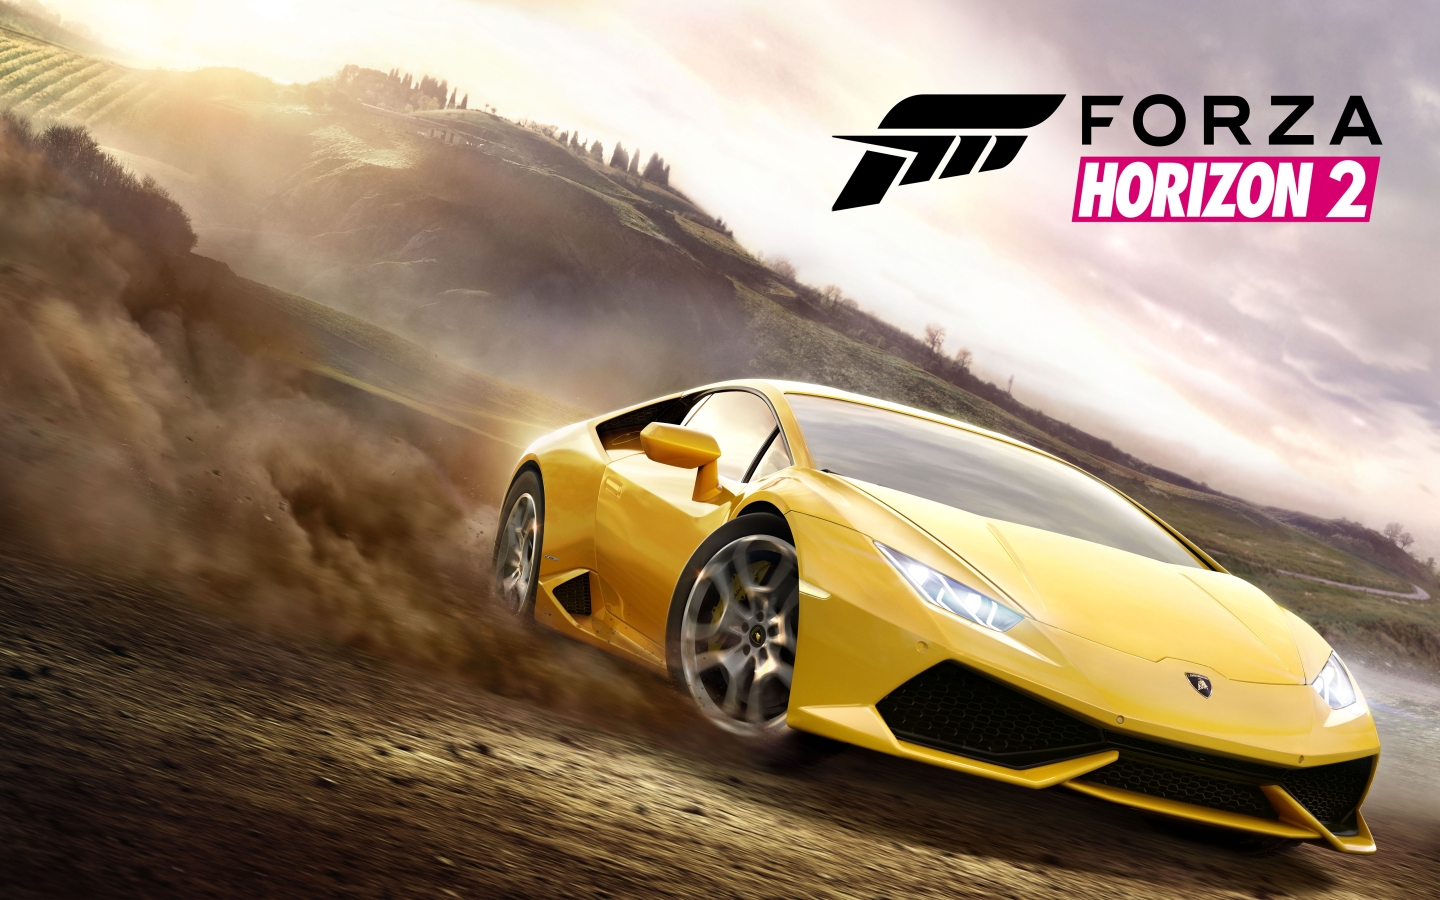 Forza Horizon 2 for 1440 x 900 widescreen resolution